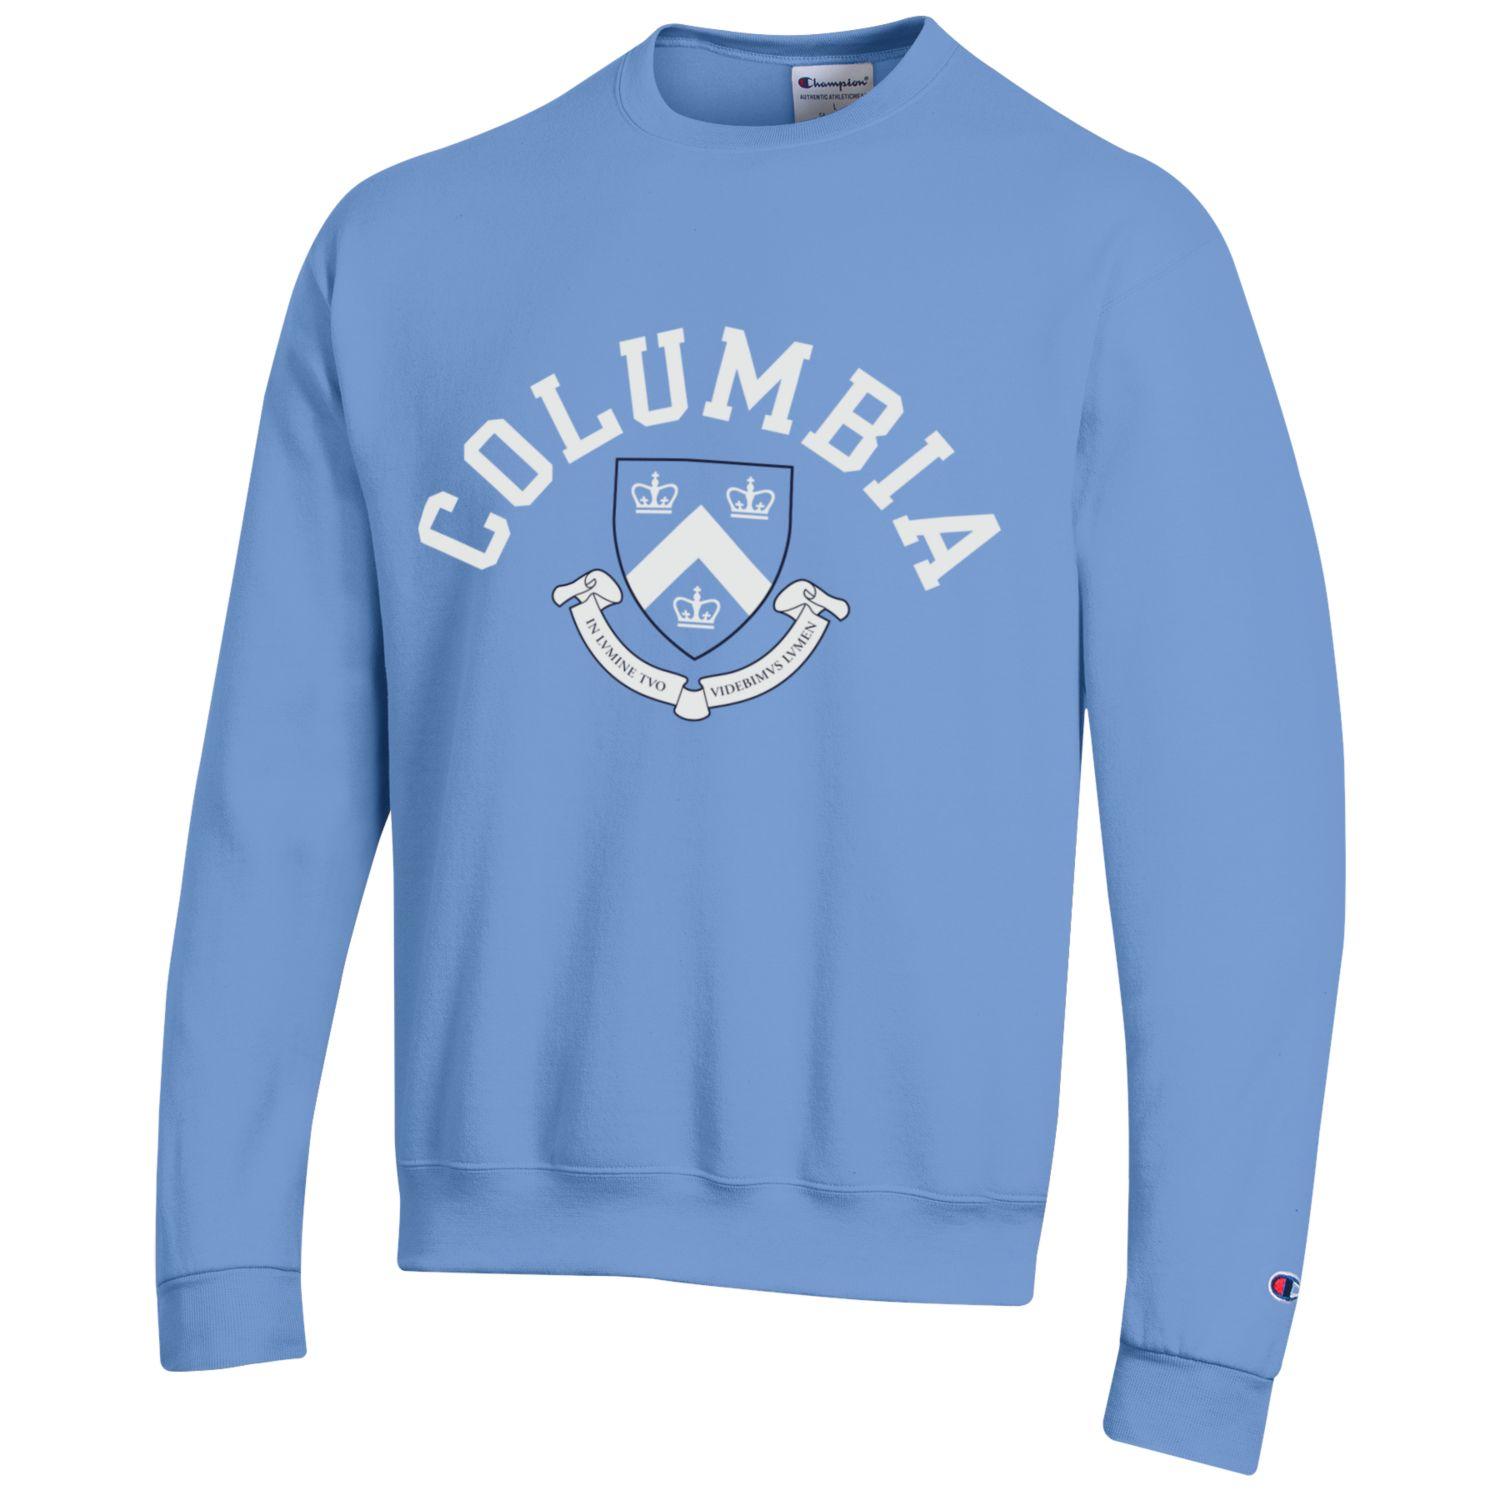 Columbia University crewneck sweatshirt